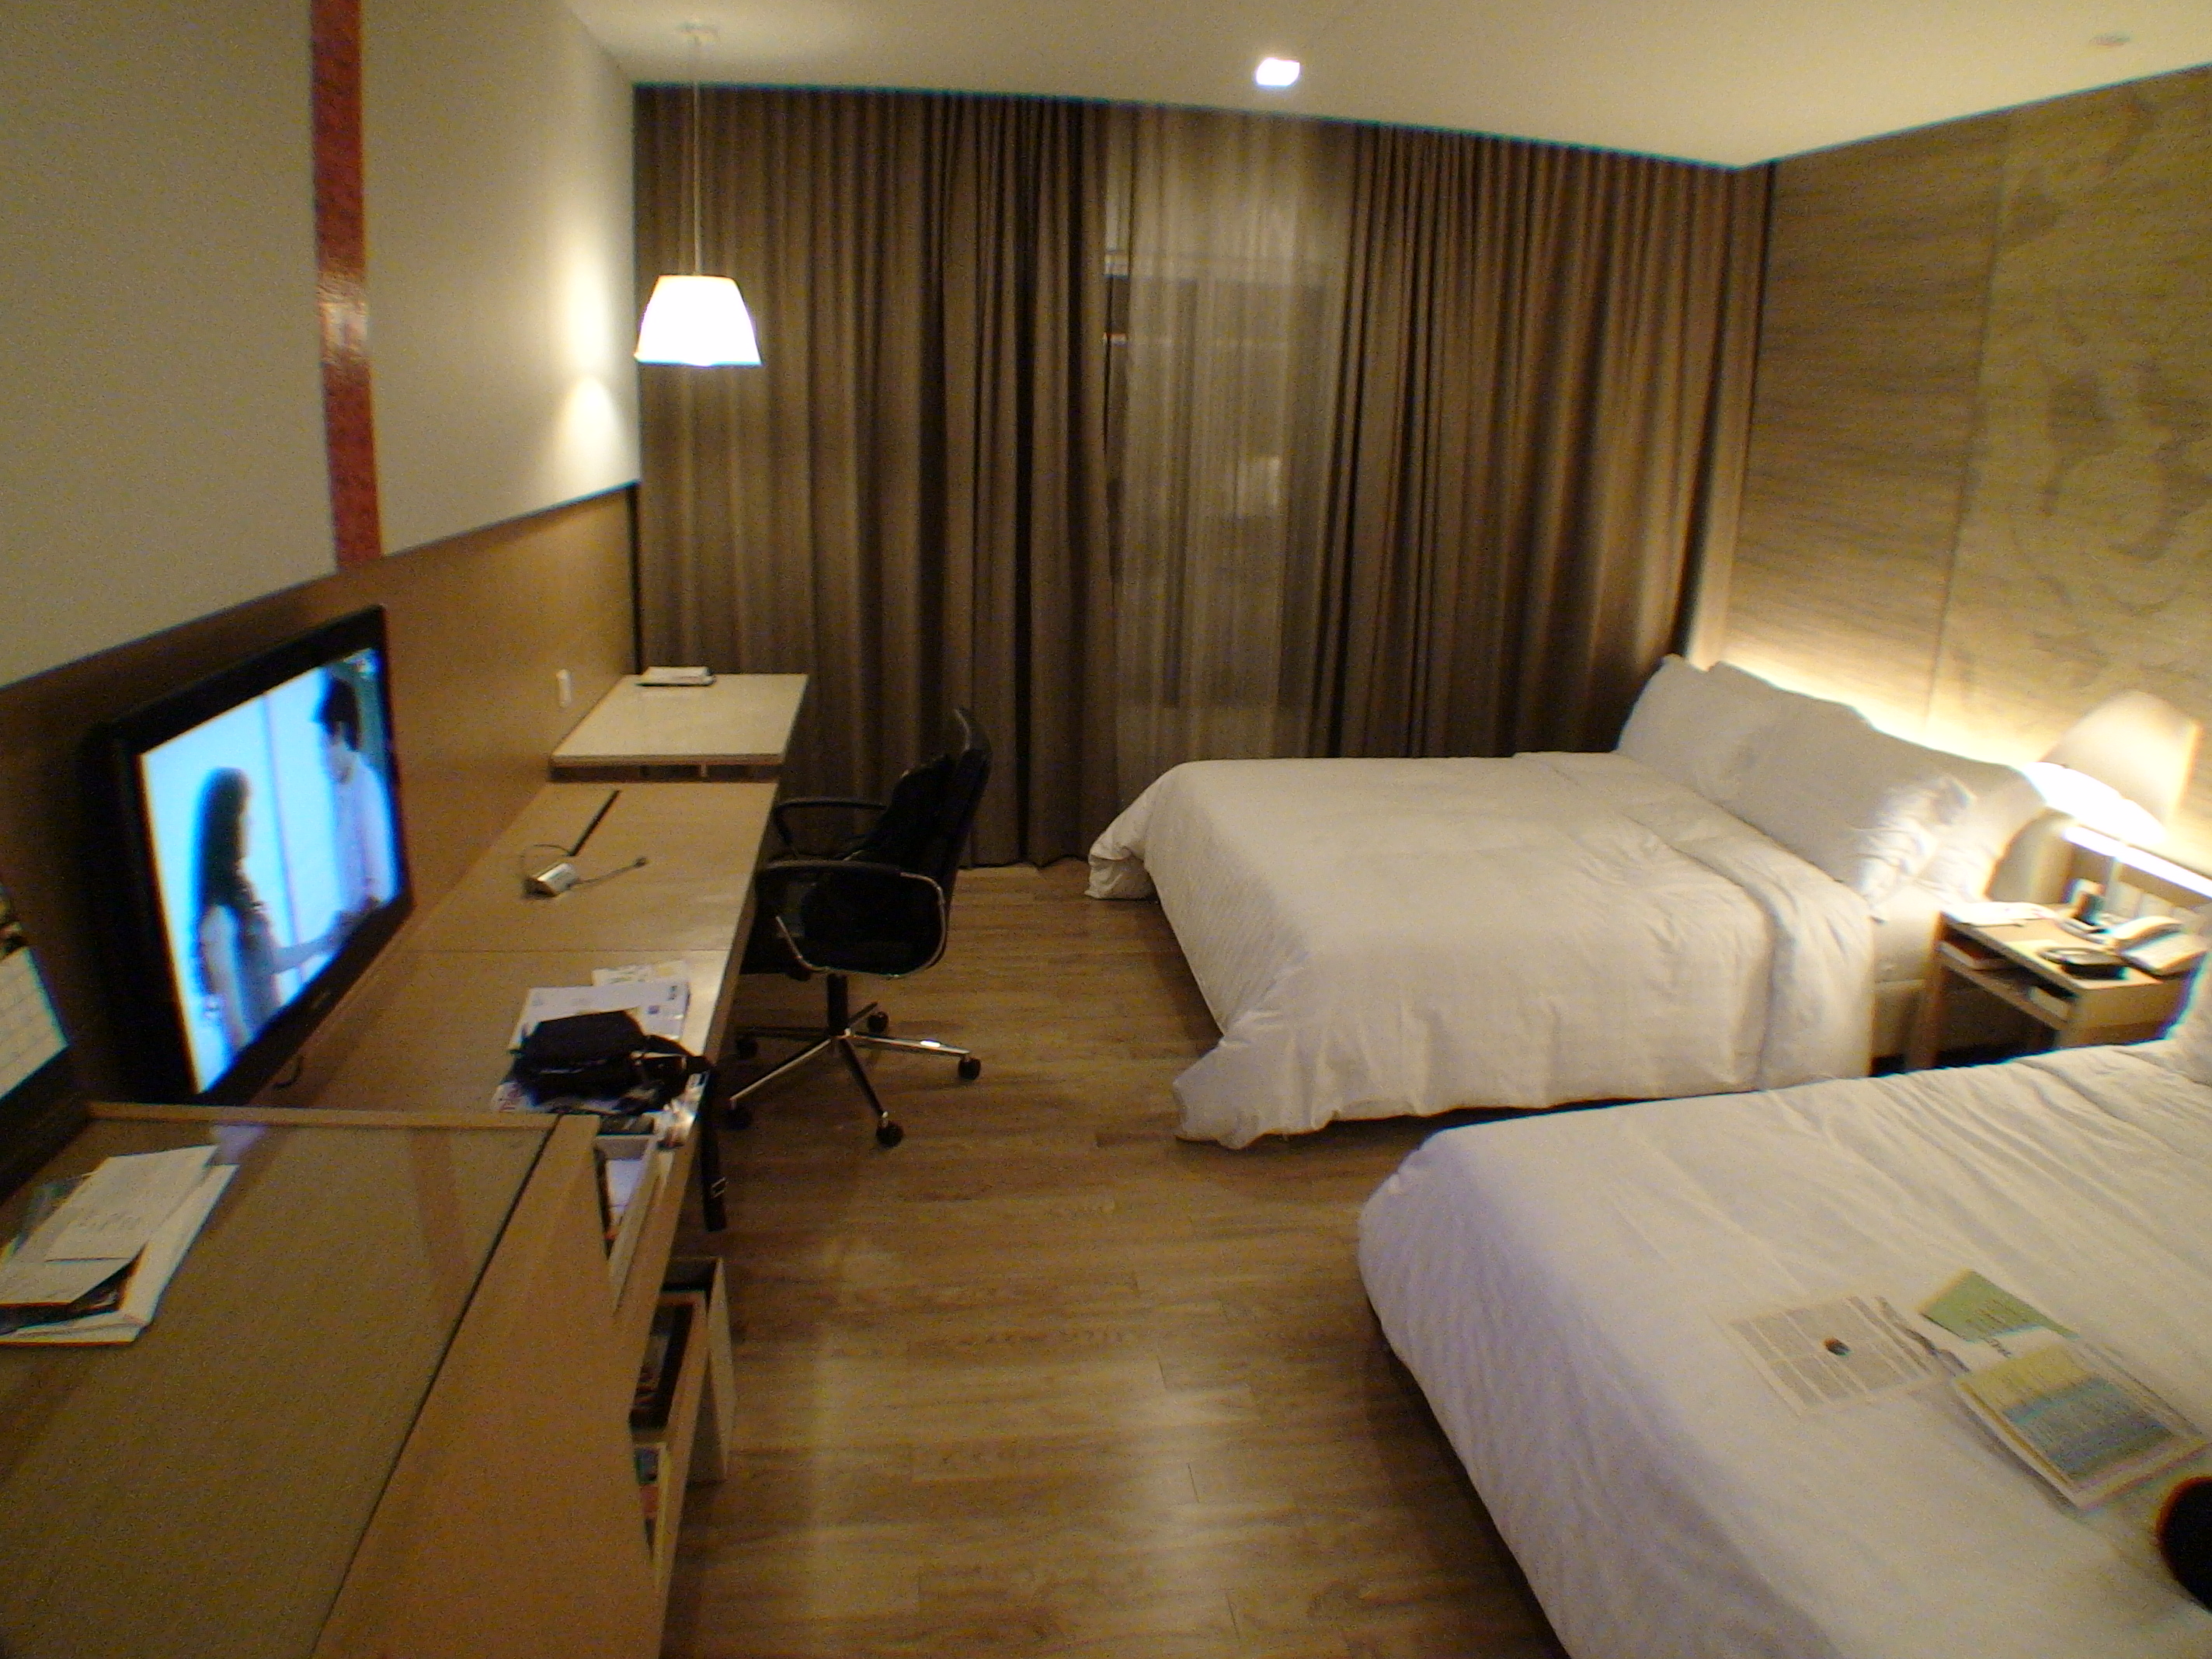 リノベーション中のパトゥムワンプリンセスの部屋を紹介します。 | パトゥムワン プリンセス ホテルの口コミ・Q＆A | バンコクナビ